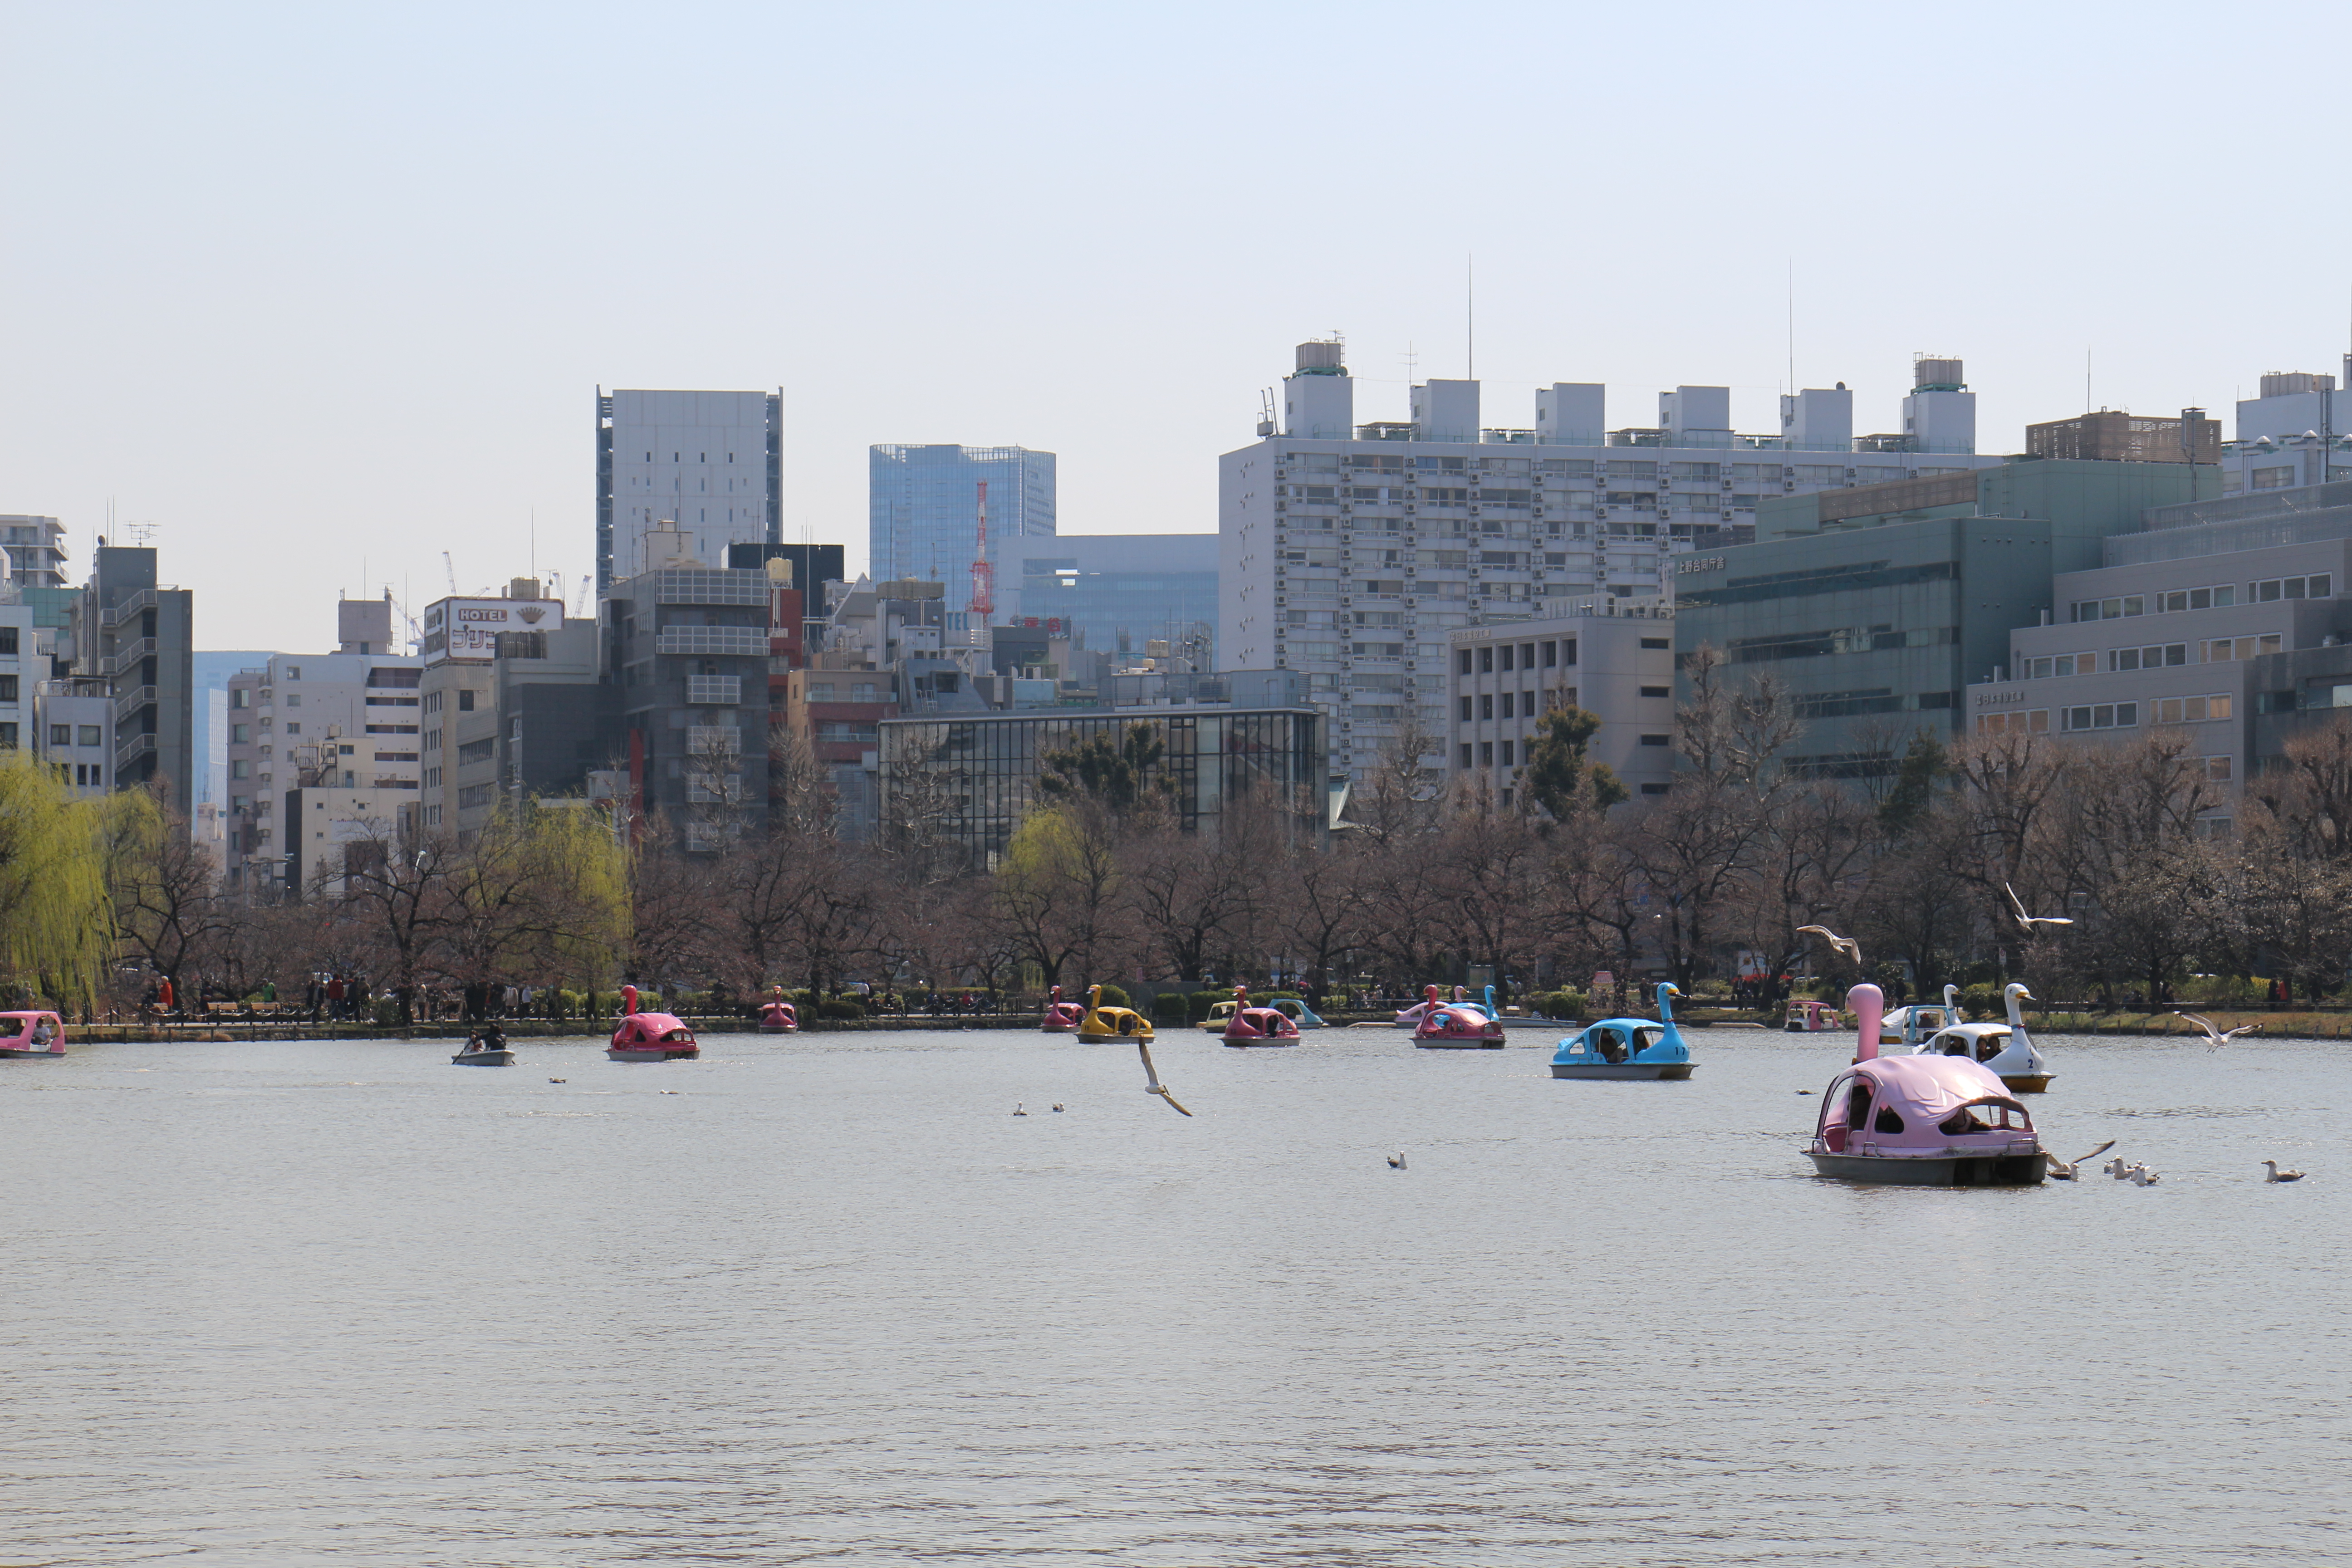 Vue sur l'étang du parc Ueno. On voit des mouettes, des barques, des pédalos-cygne dans des couleurs pastel. Au-delà du parc, une ligne de buildings cache l'horizon.